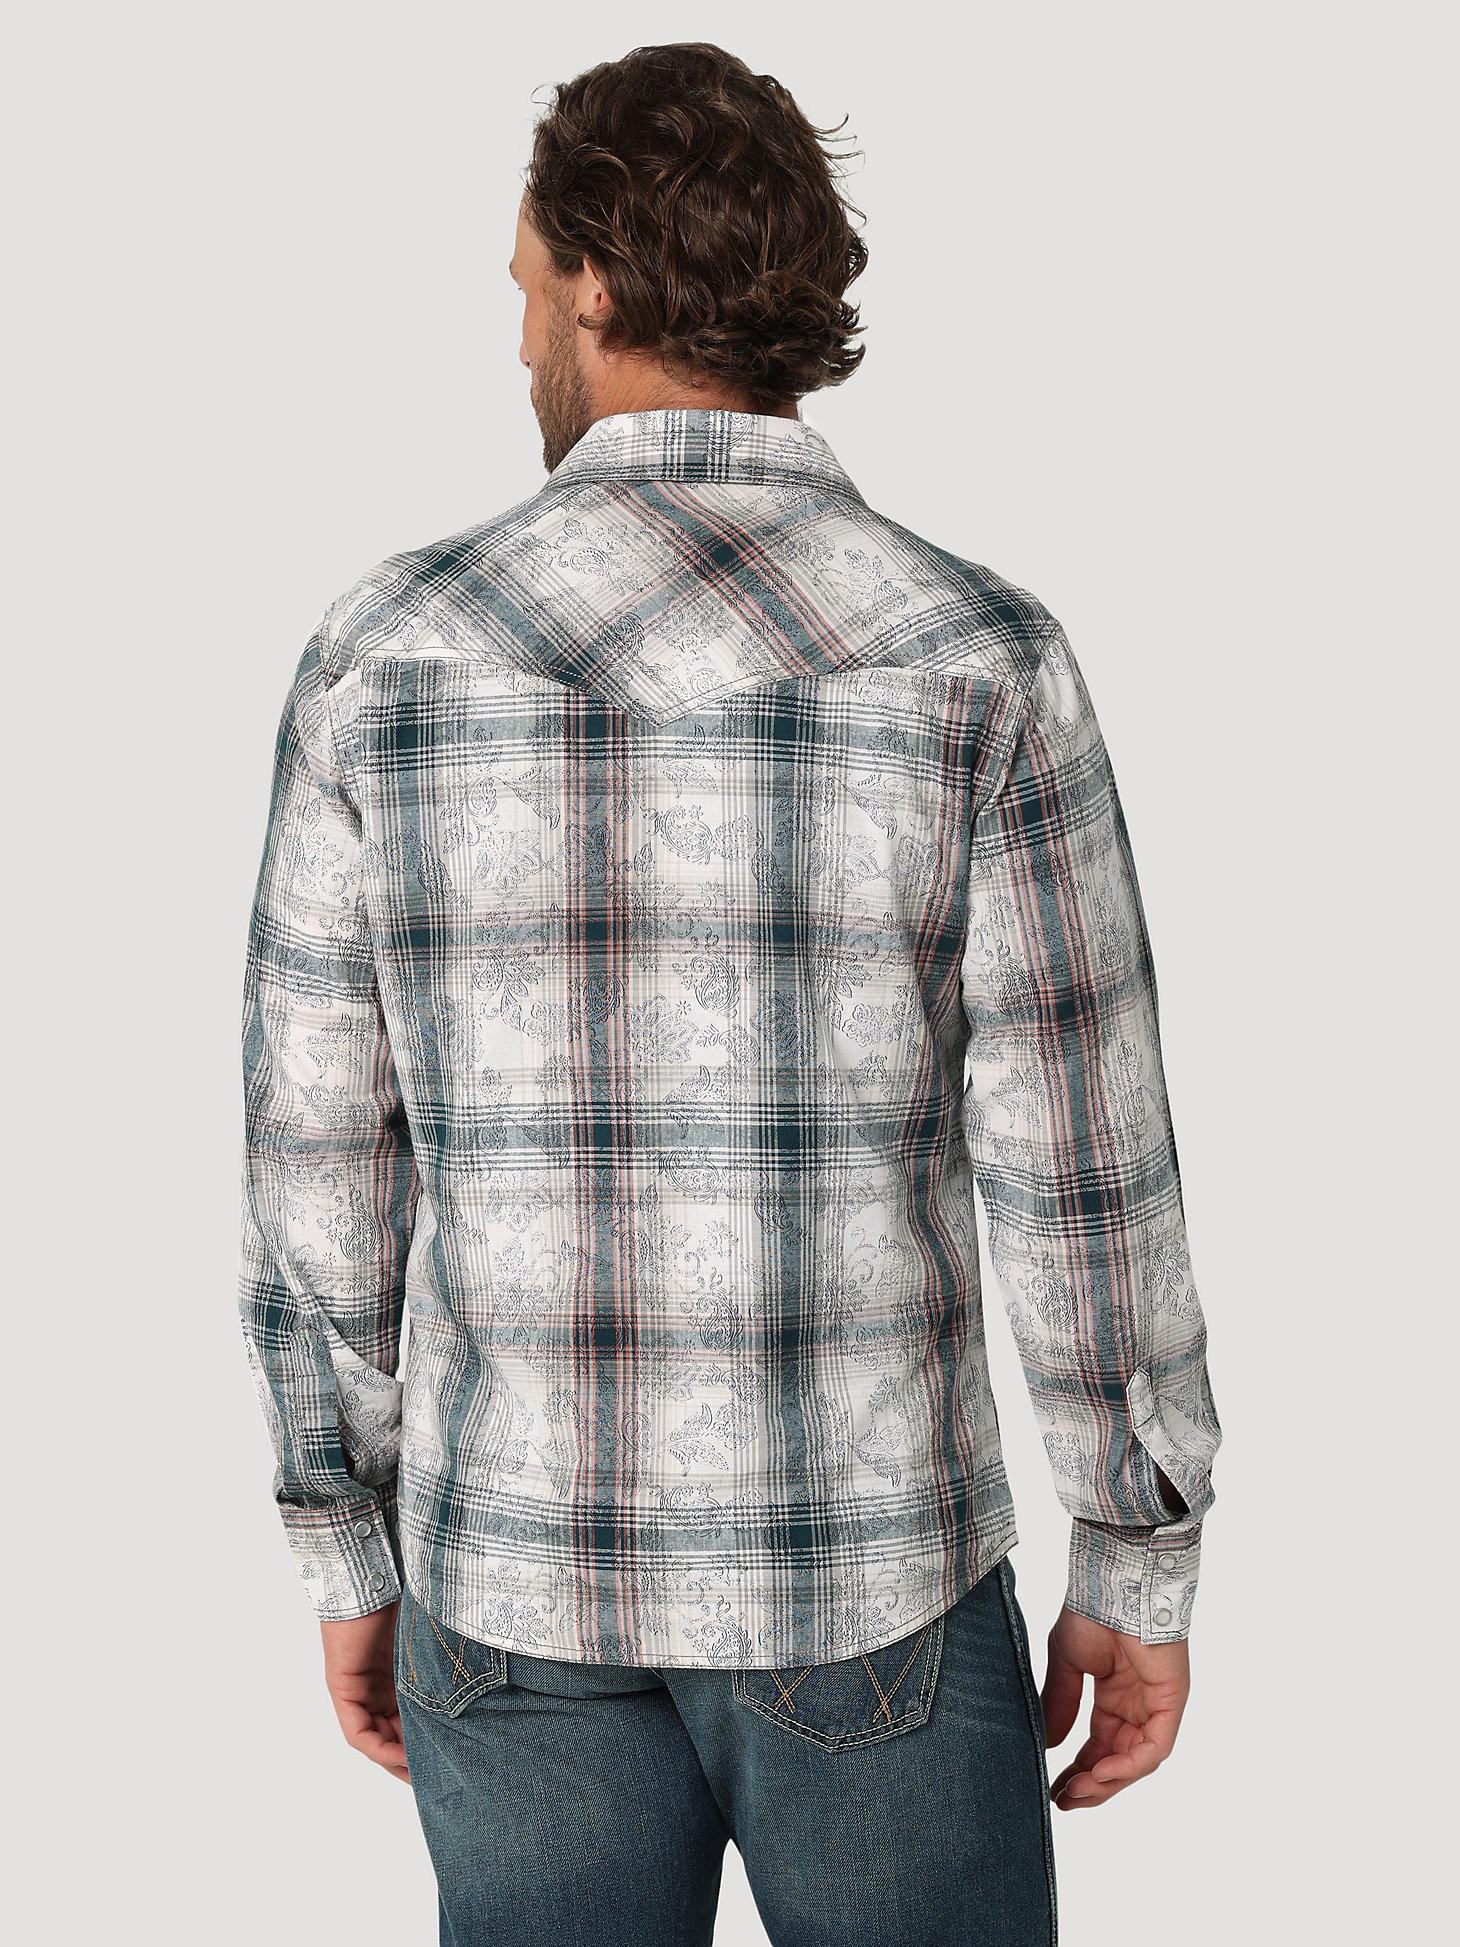 Men's Wrangler Retro® Premium Long Sleeve Western Snap Overprint Shirt in White Gray alternative view 1